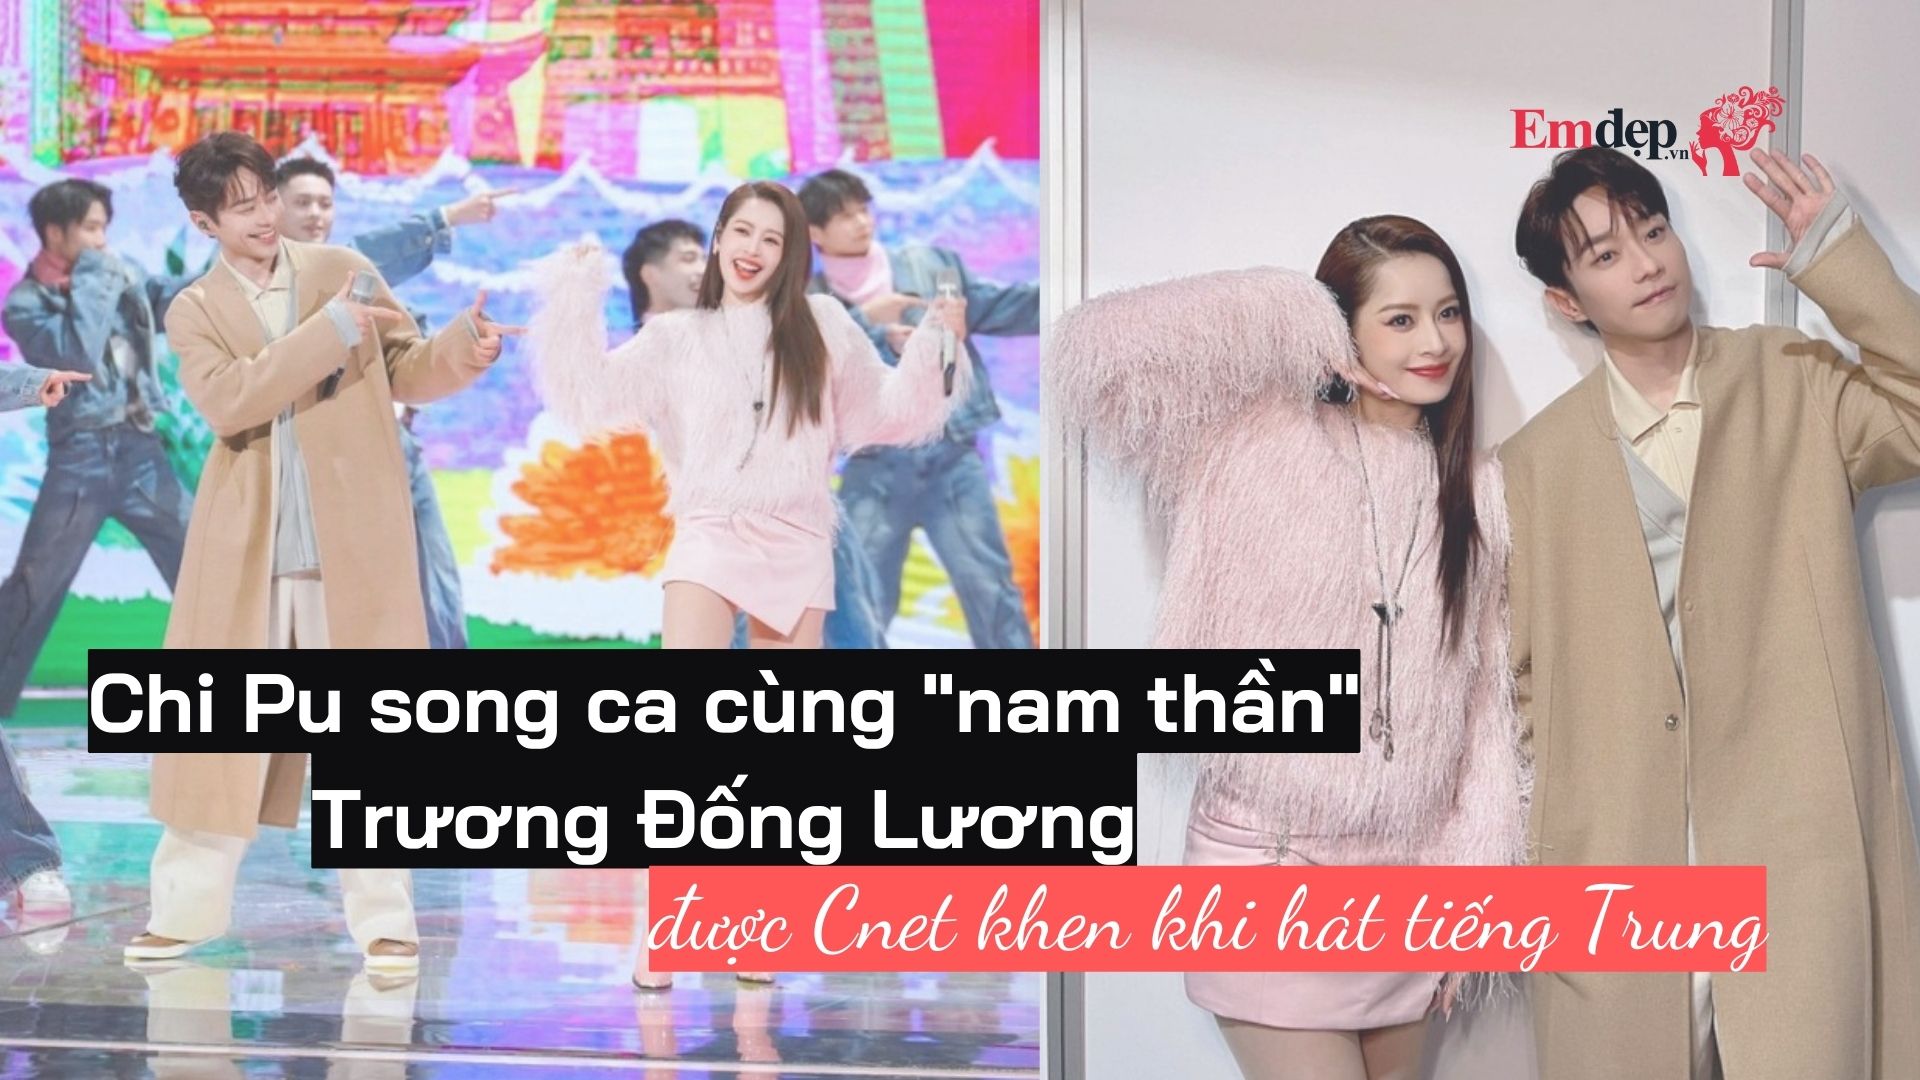 Chi Pu song ca cùng "nam thần" Trương Đống Lương, được Cnet khen khi hát tiếng Trung